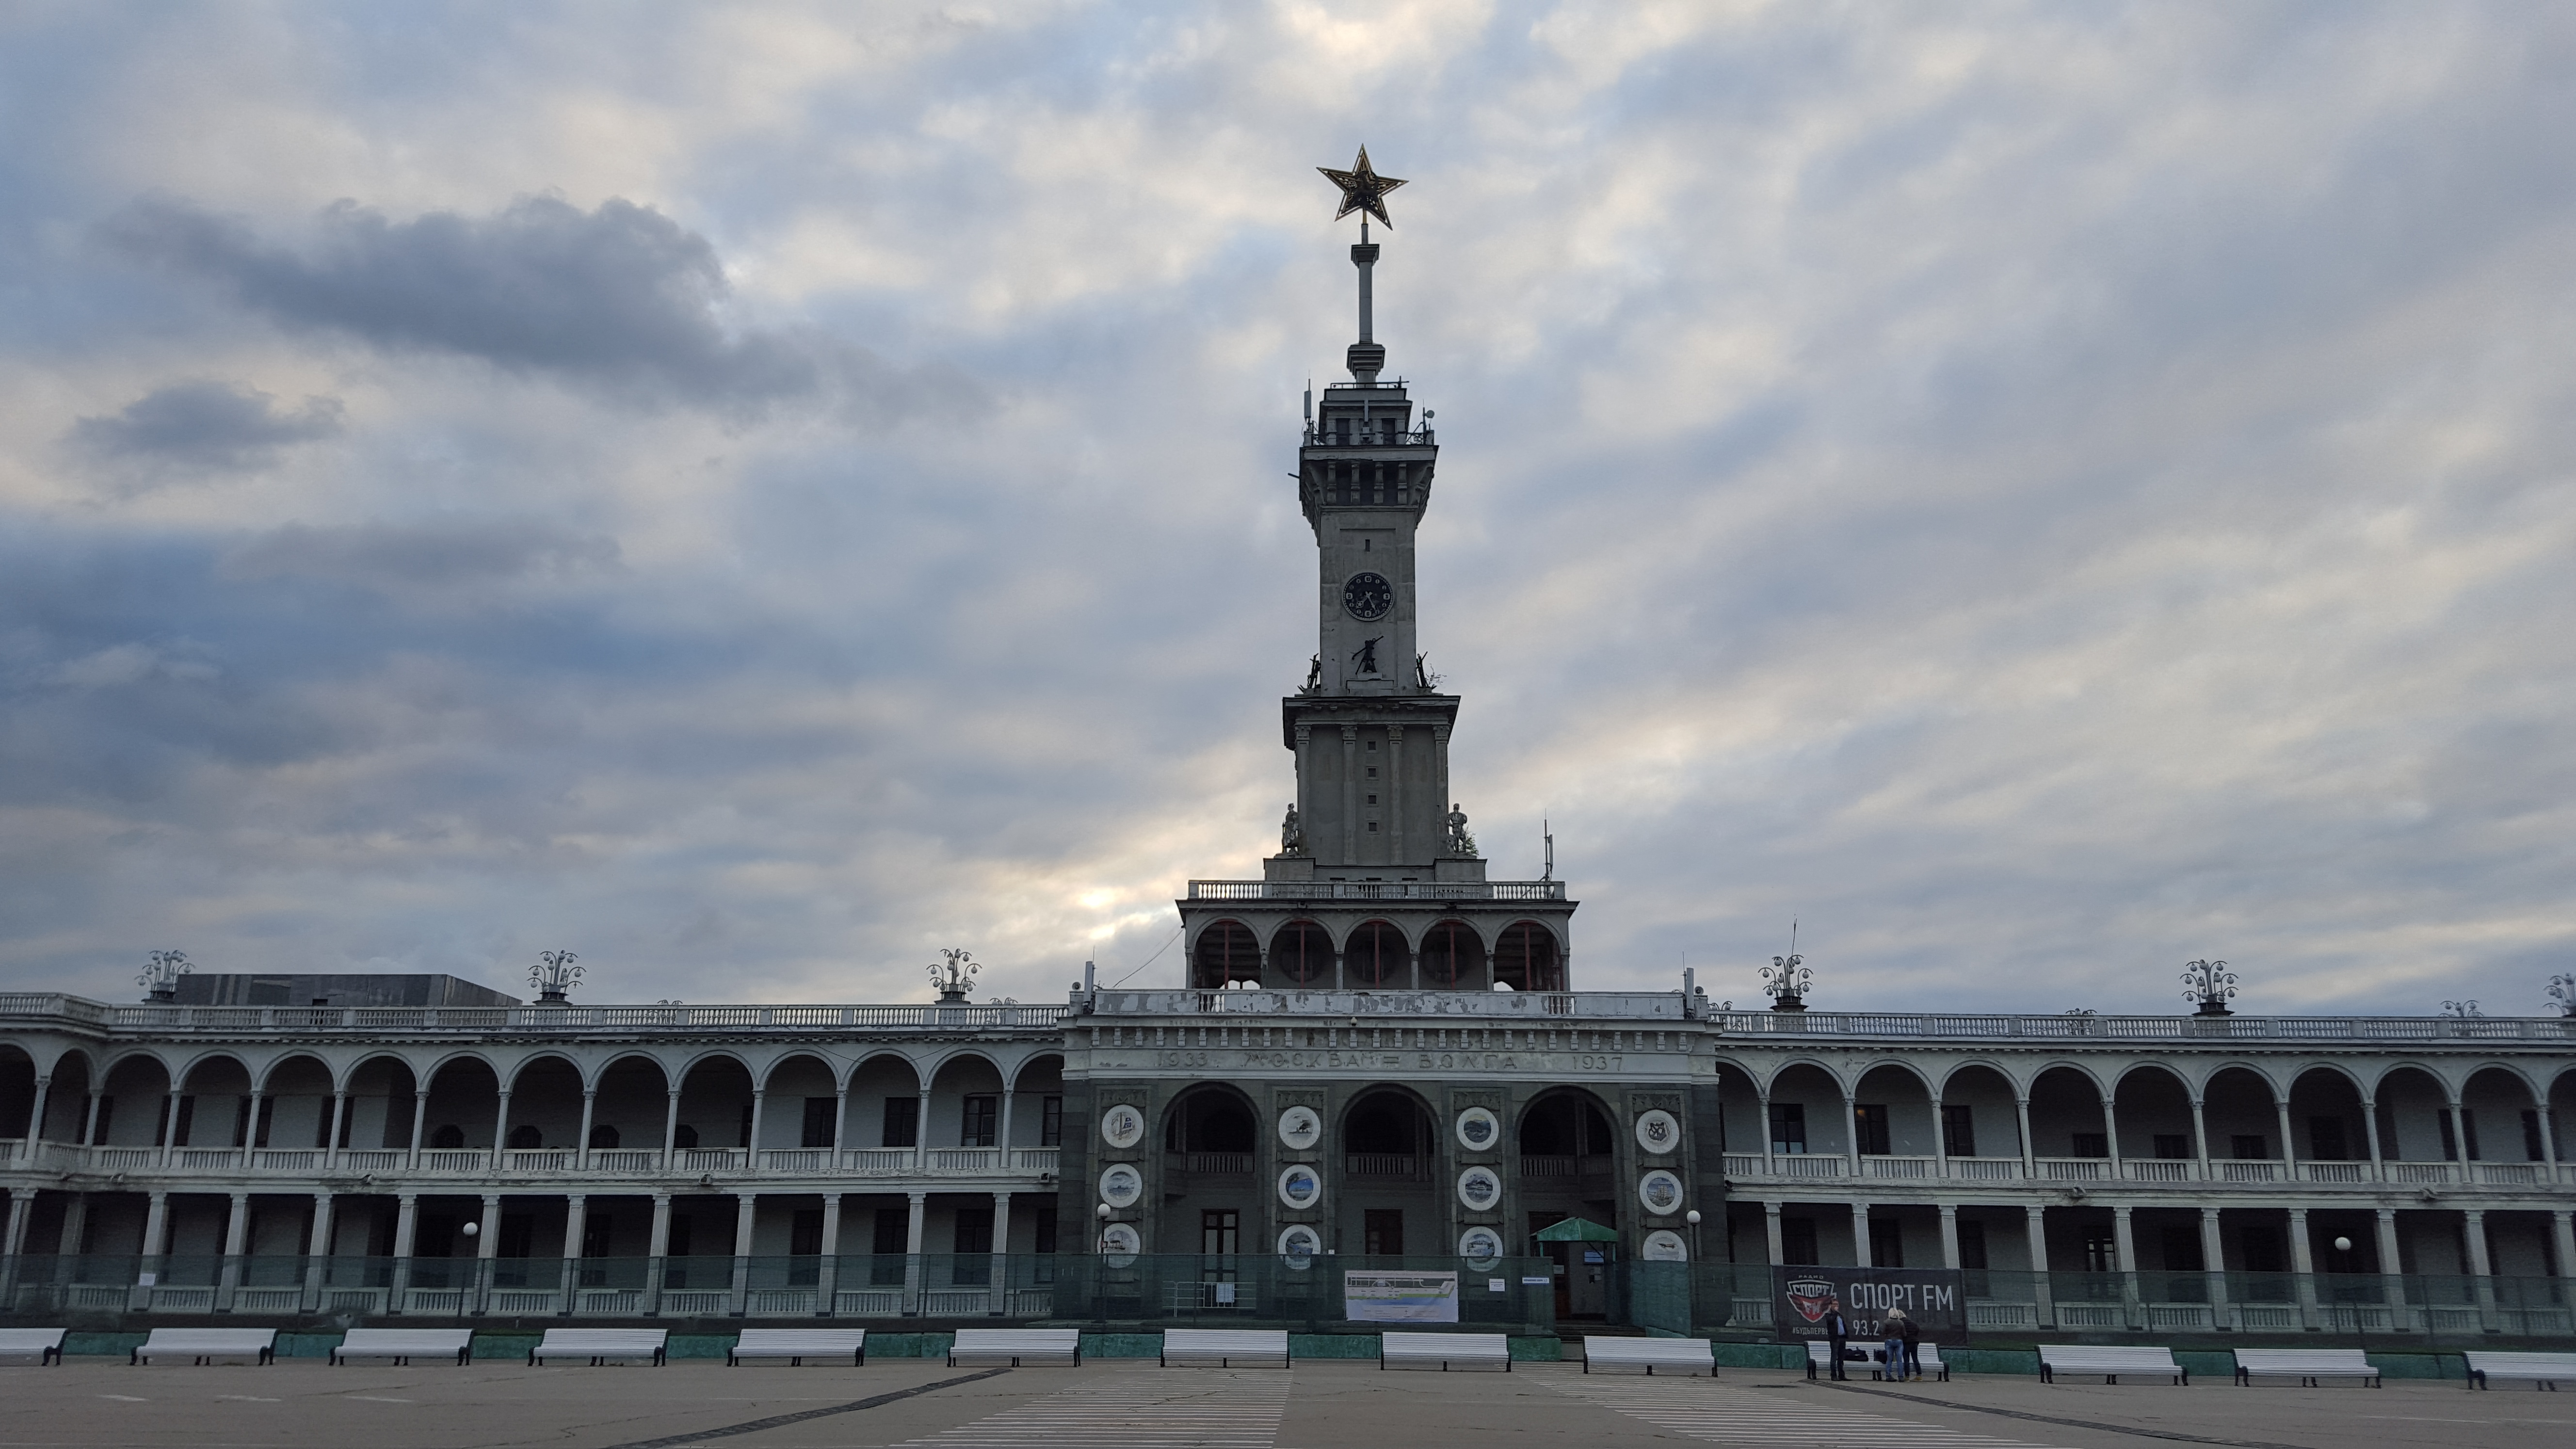 Символы москвы северный речной вокзал